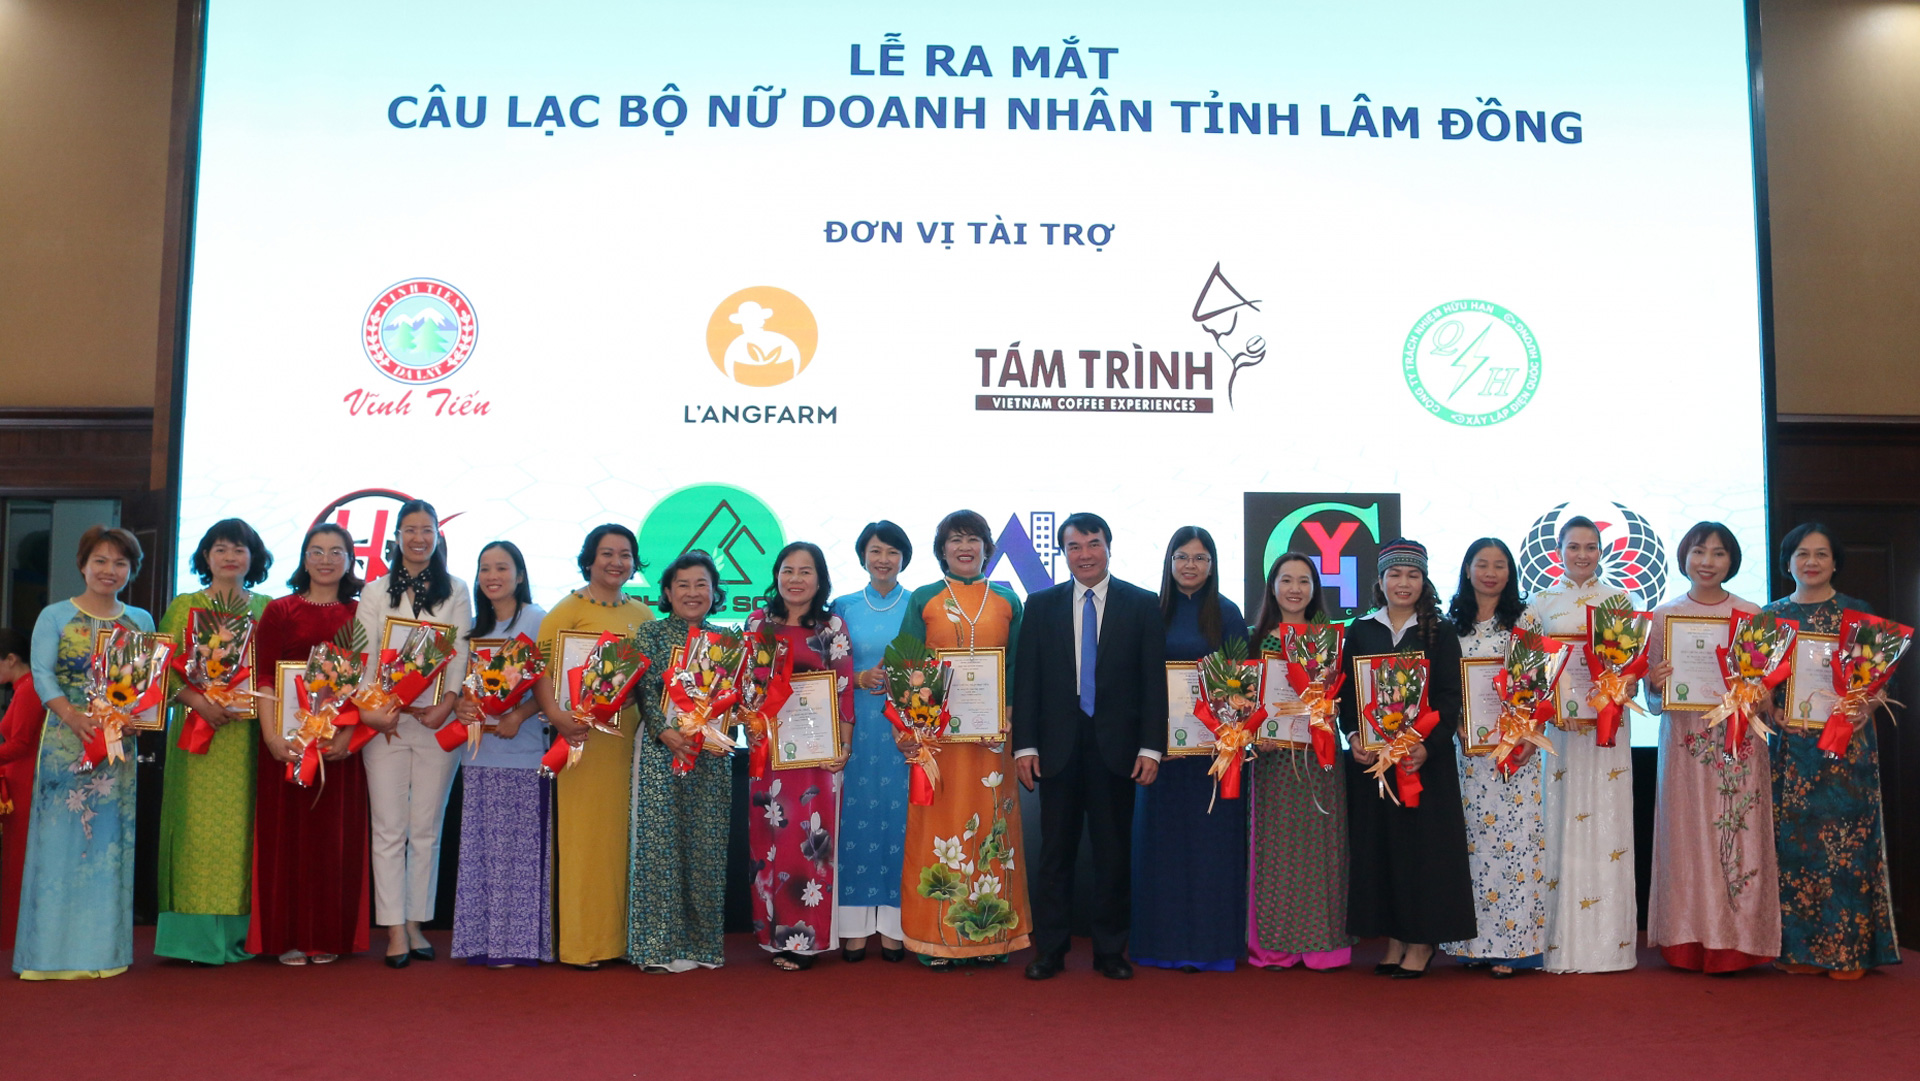 Trưởng Ban Dân vận Tỉnh ủy Phạm Thị Phúc và Phó Chủ tịch UBND tỉnh Phạm S trao giấy chứng nhận và tặng hoa cho các thành viên CLB Nữ doanh nhân tỉnh Lâm Đồng